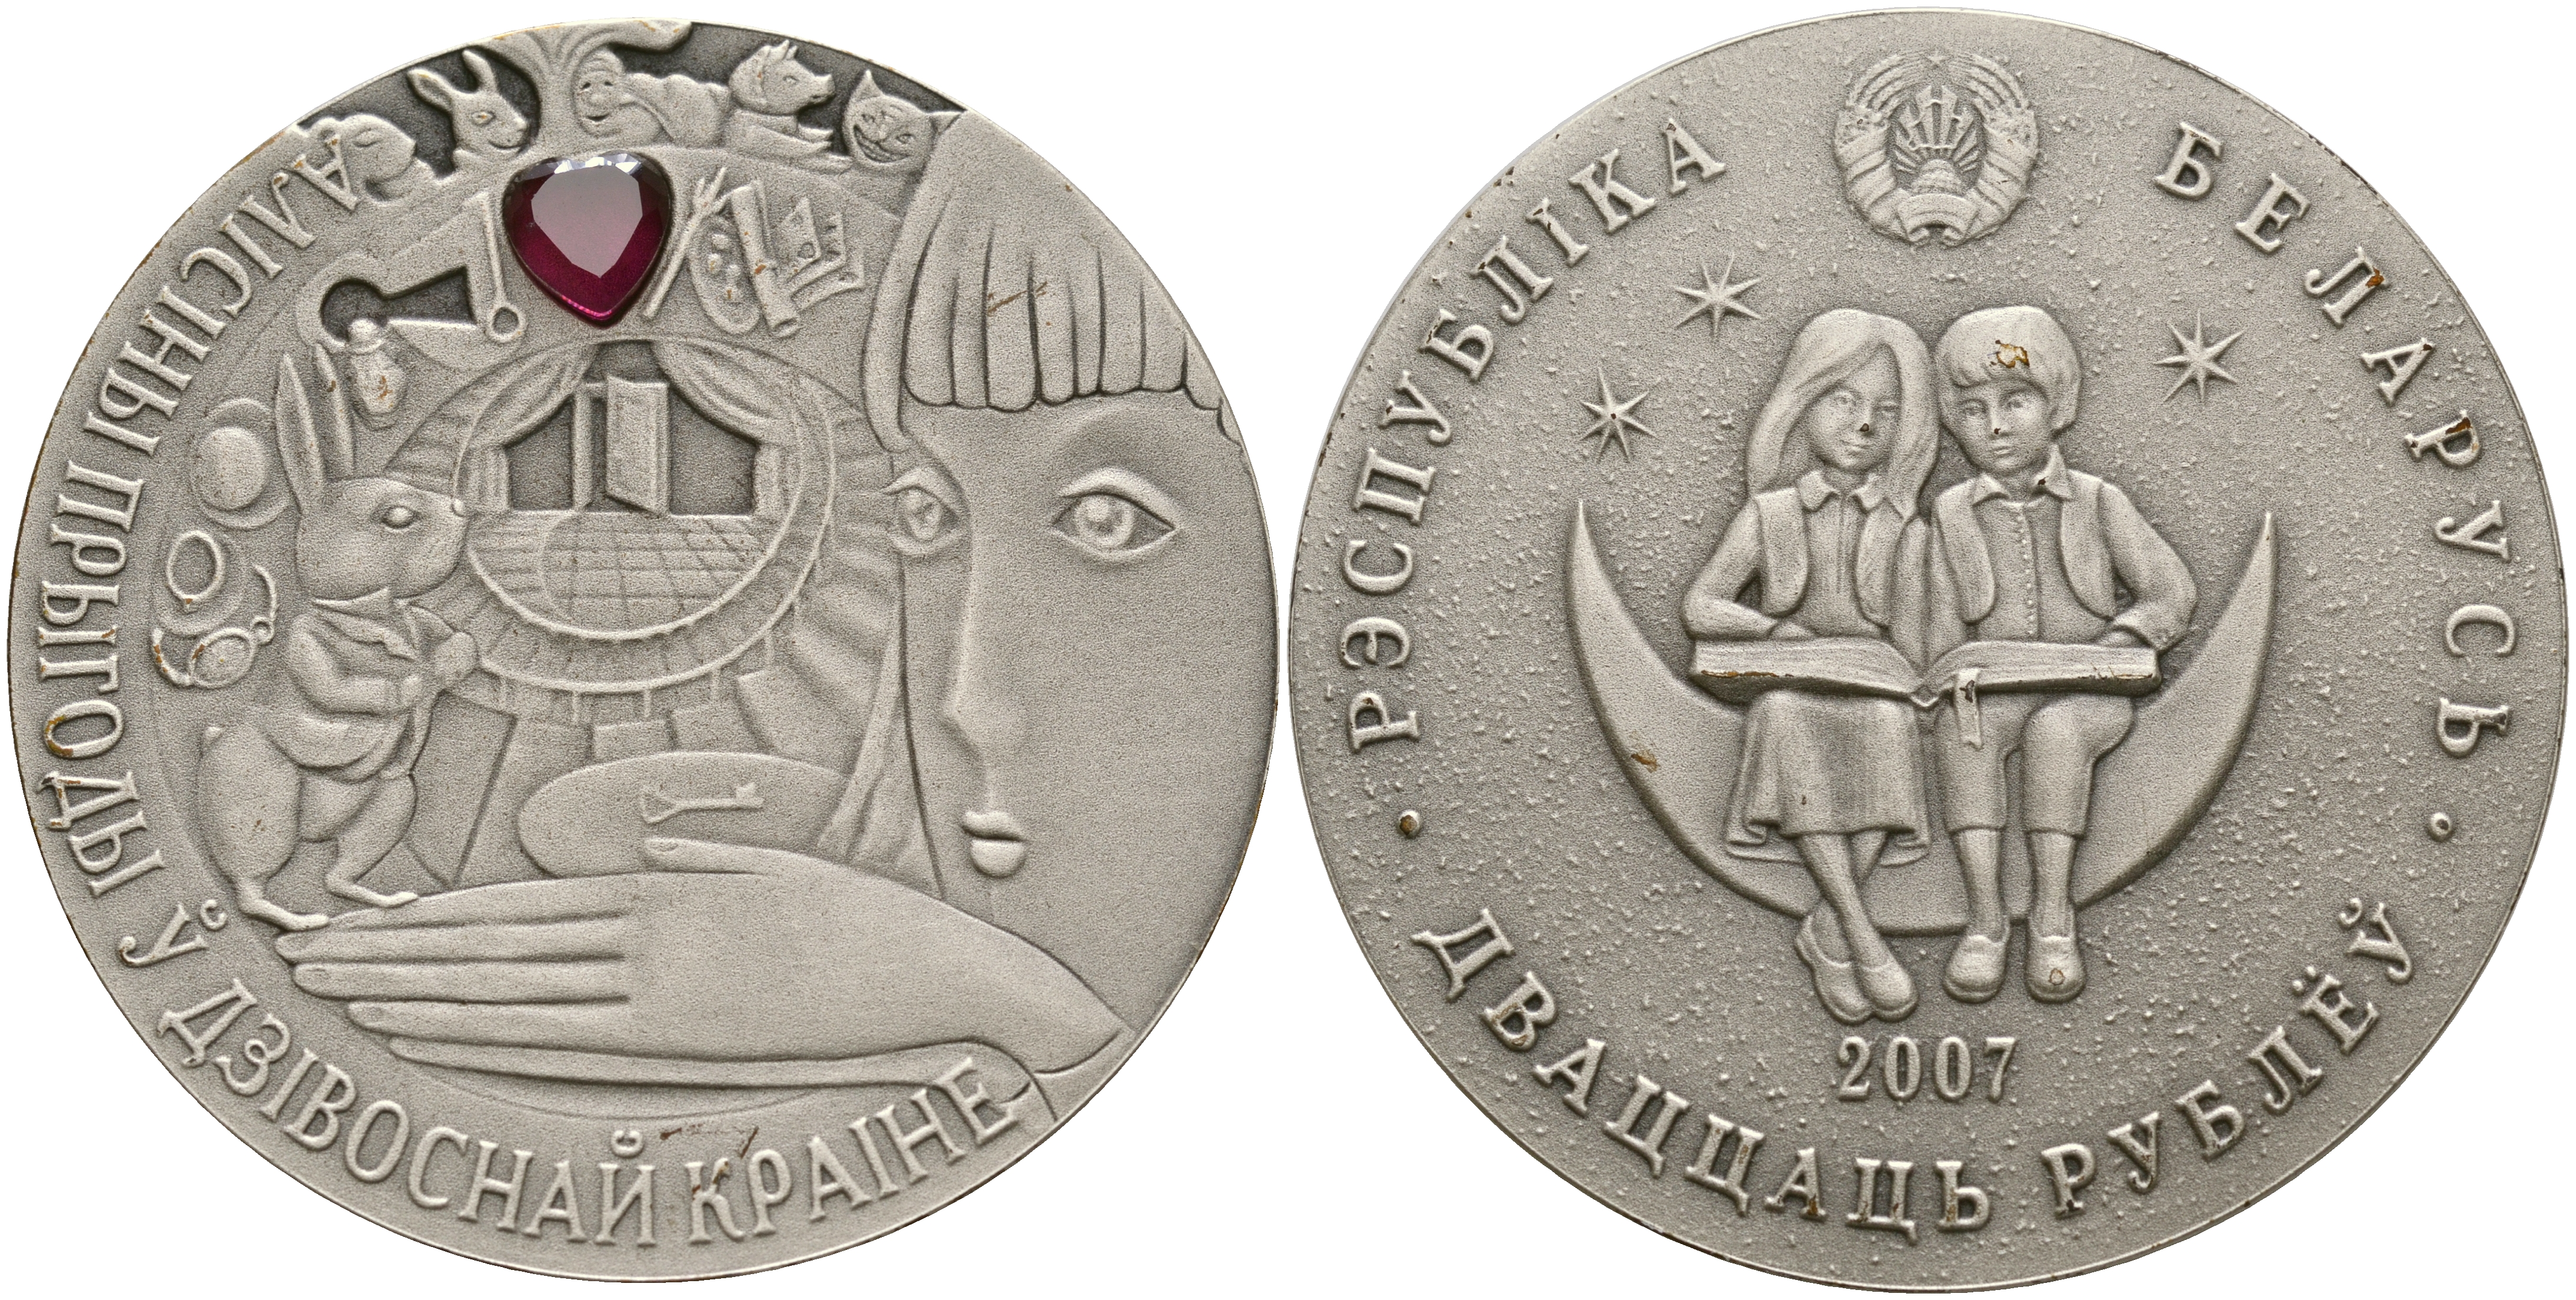 Мир 20 рублей. Монета Беларусь серебро. Antique finish серебряные монеты. Монета дом Богородицы.